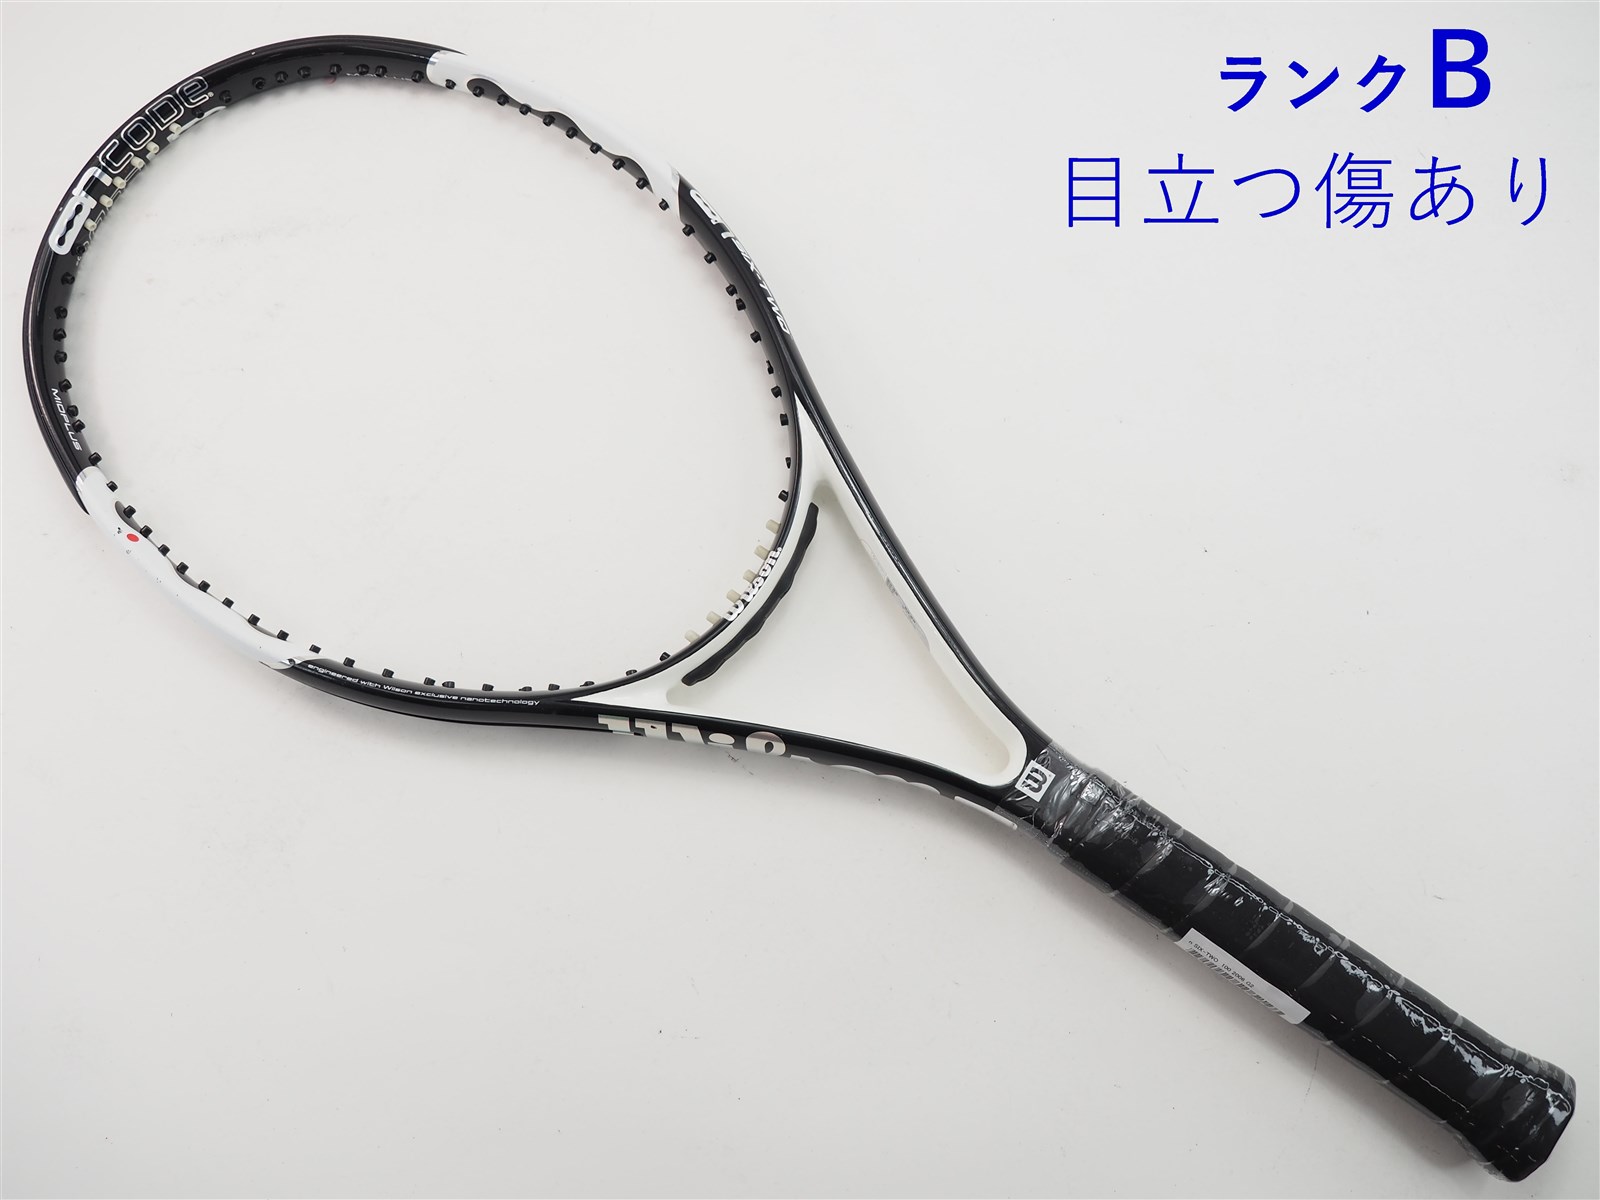 テニスラケット ウィルソン エヌ シックスツー 100 2006年モデル (G2